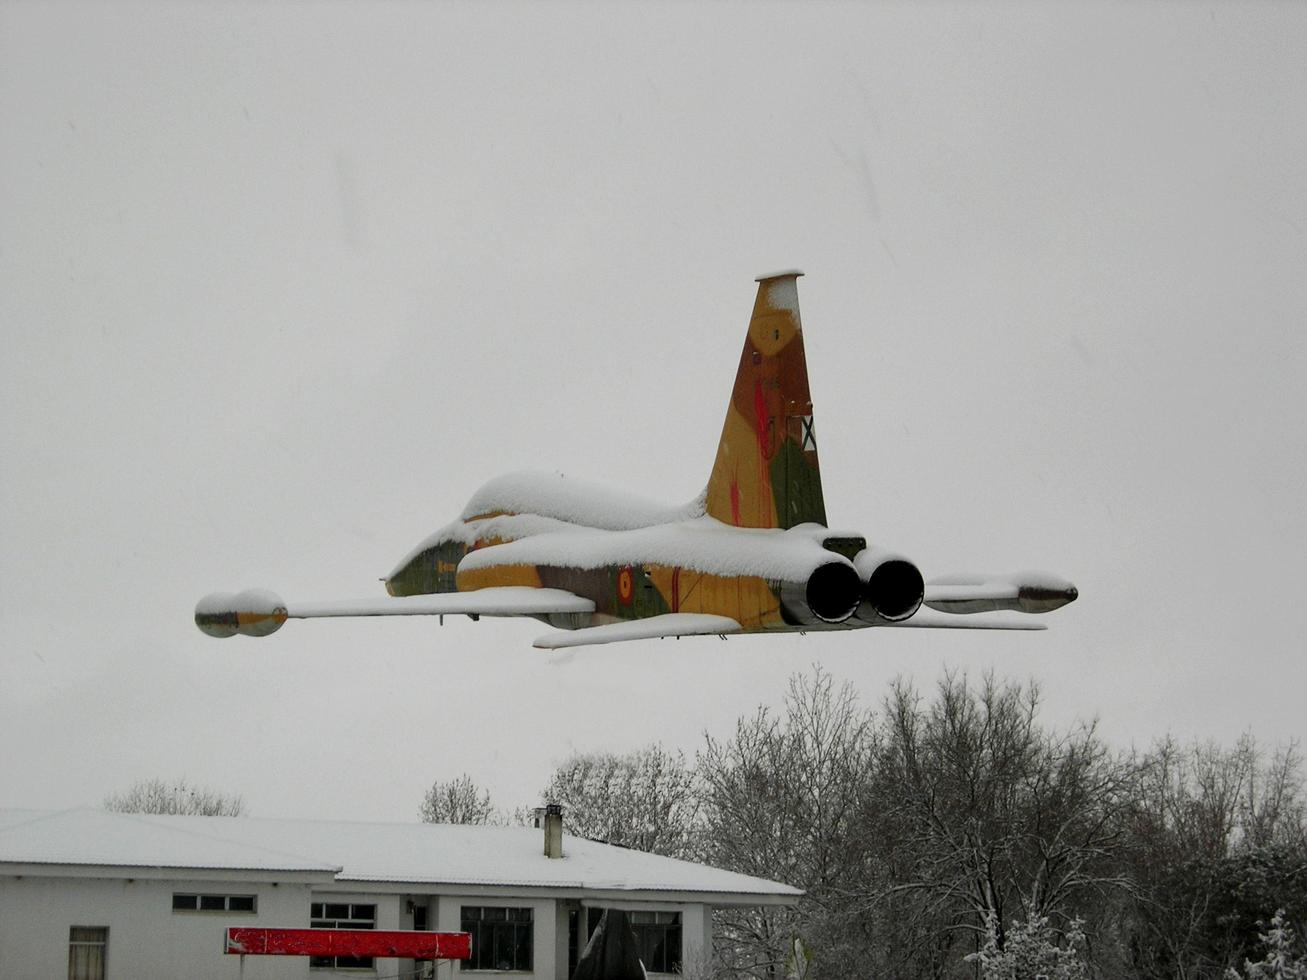 soria, espanha, 26 de setembro de 2021 - avião de guerra voando em um dia de neve foto